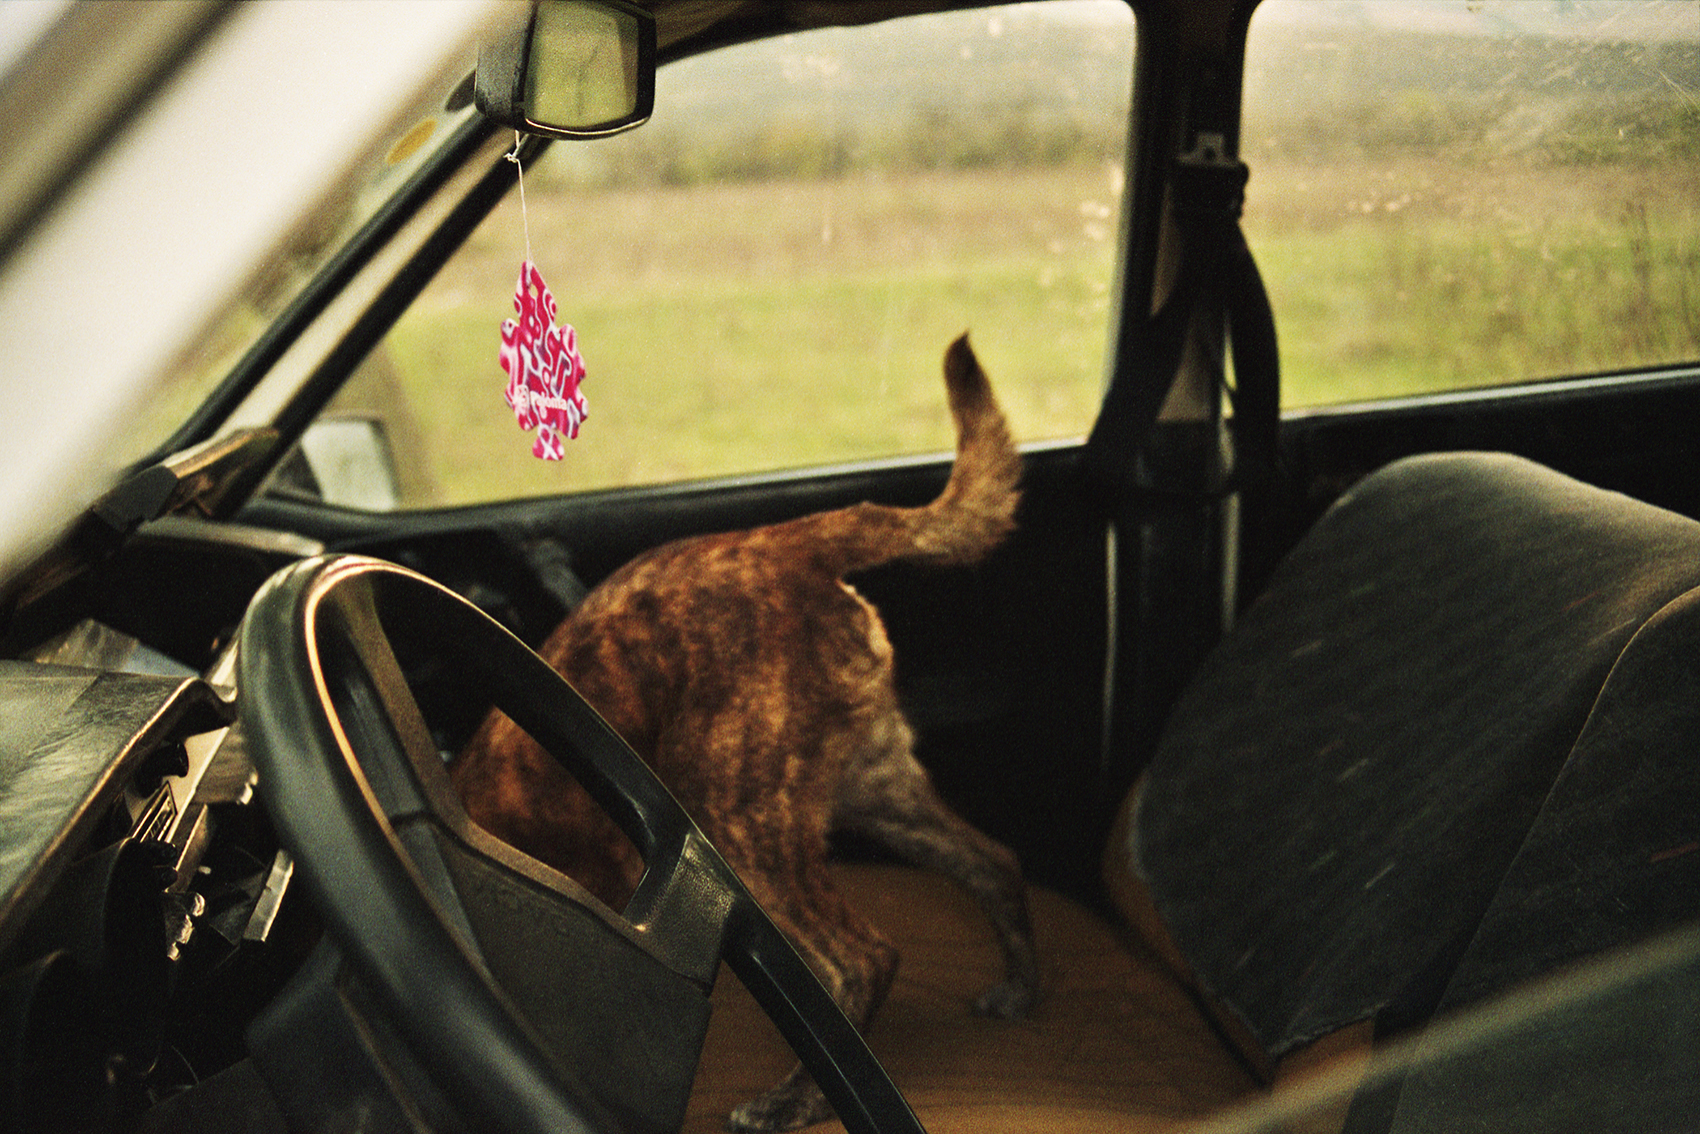 Ovidiu Gordan art photography Romanian familiar place dog in car